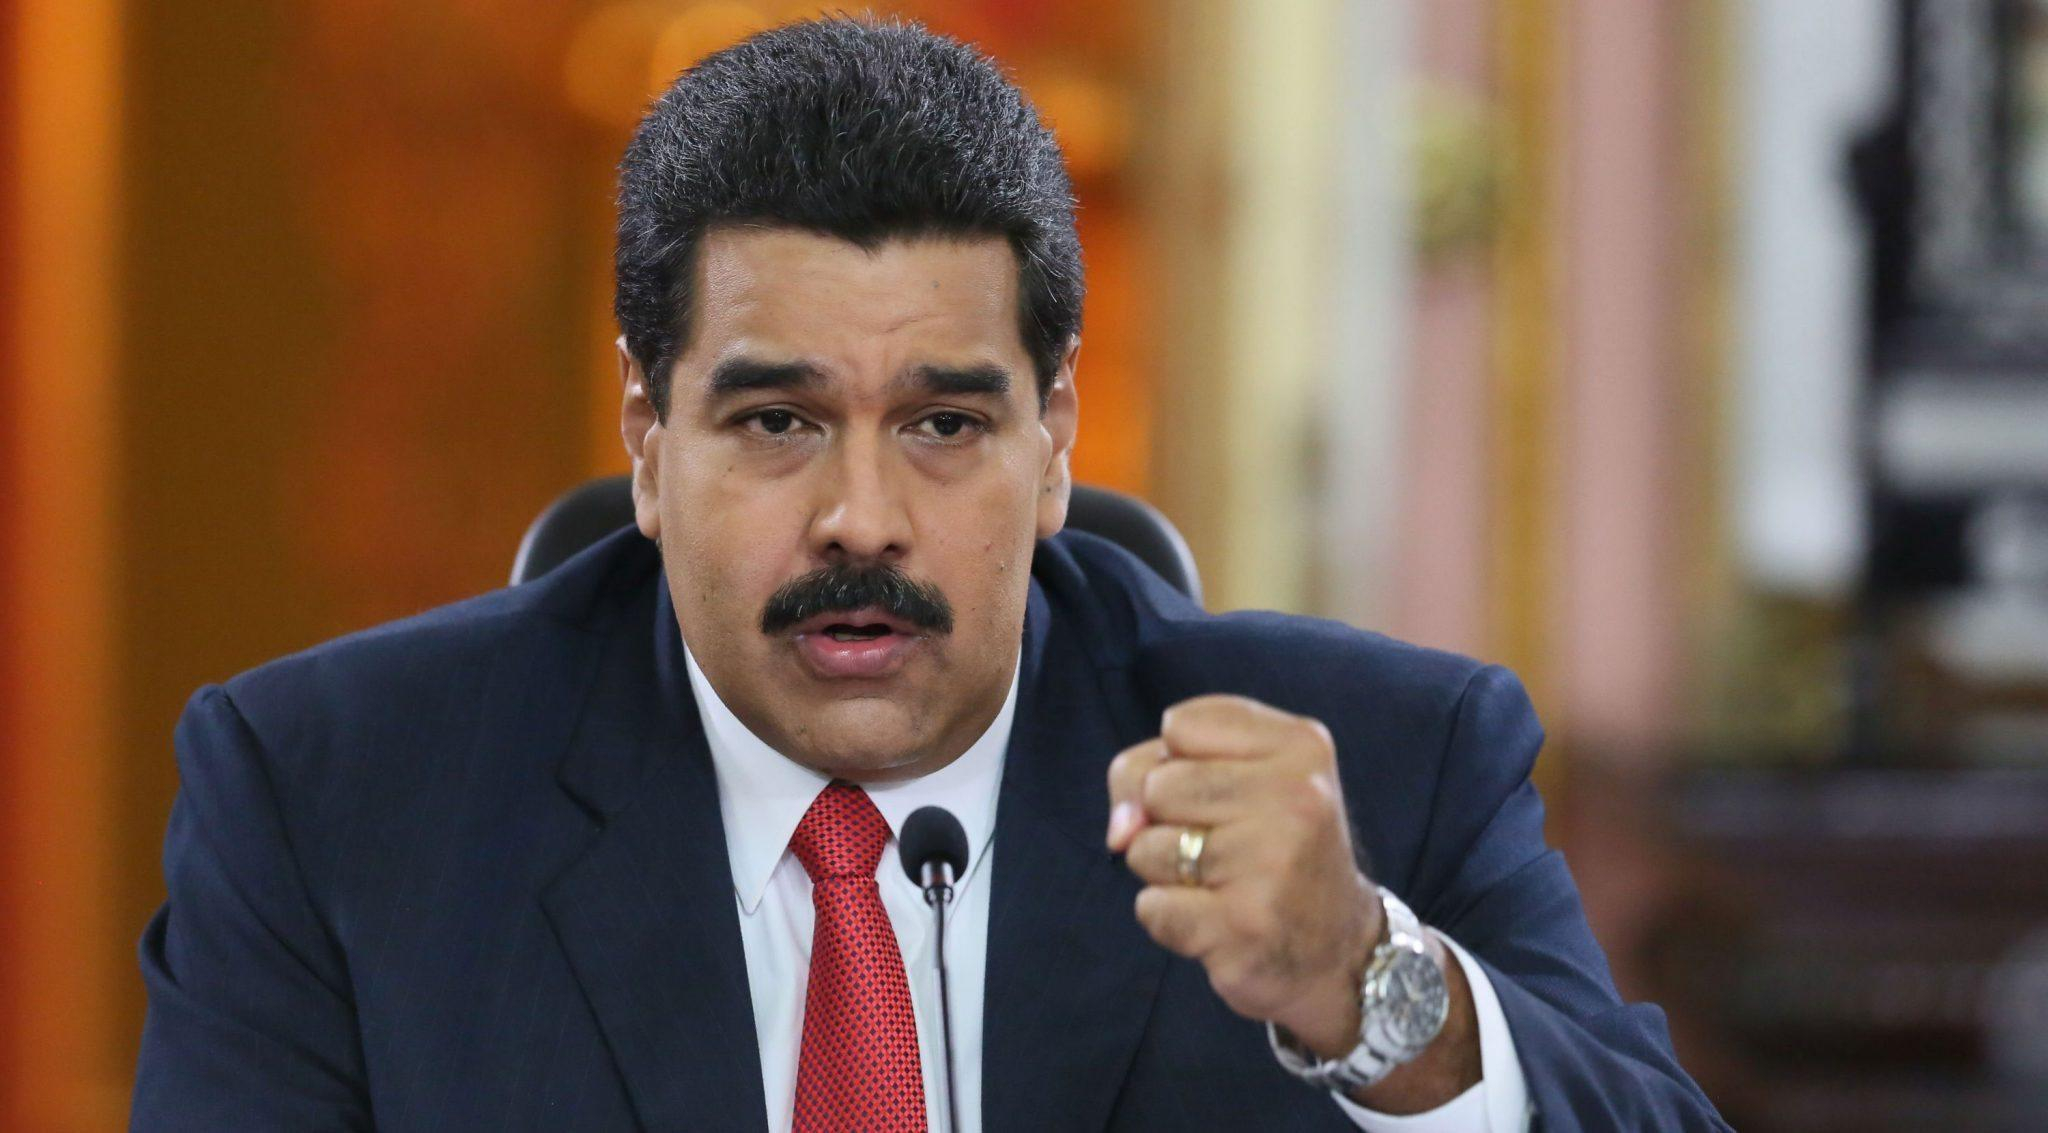 "Руки прочь от Венесуэлы!": Мадуро прокомментировал введение новых санкций США против страны